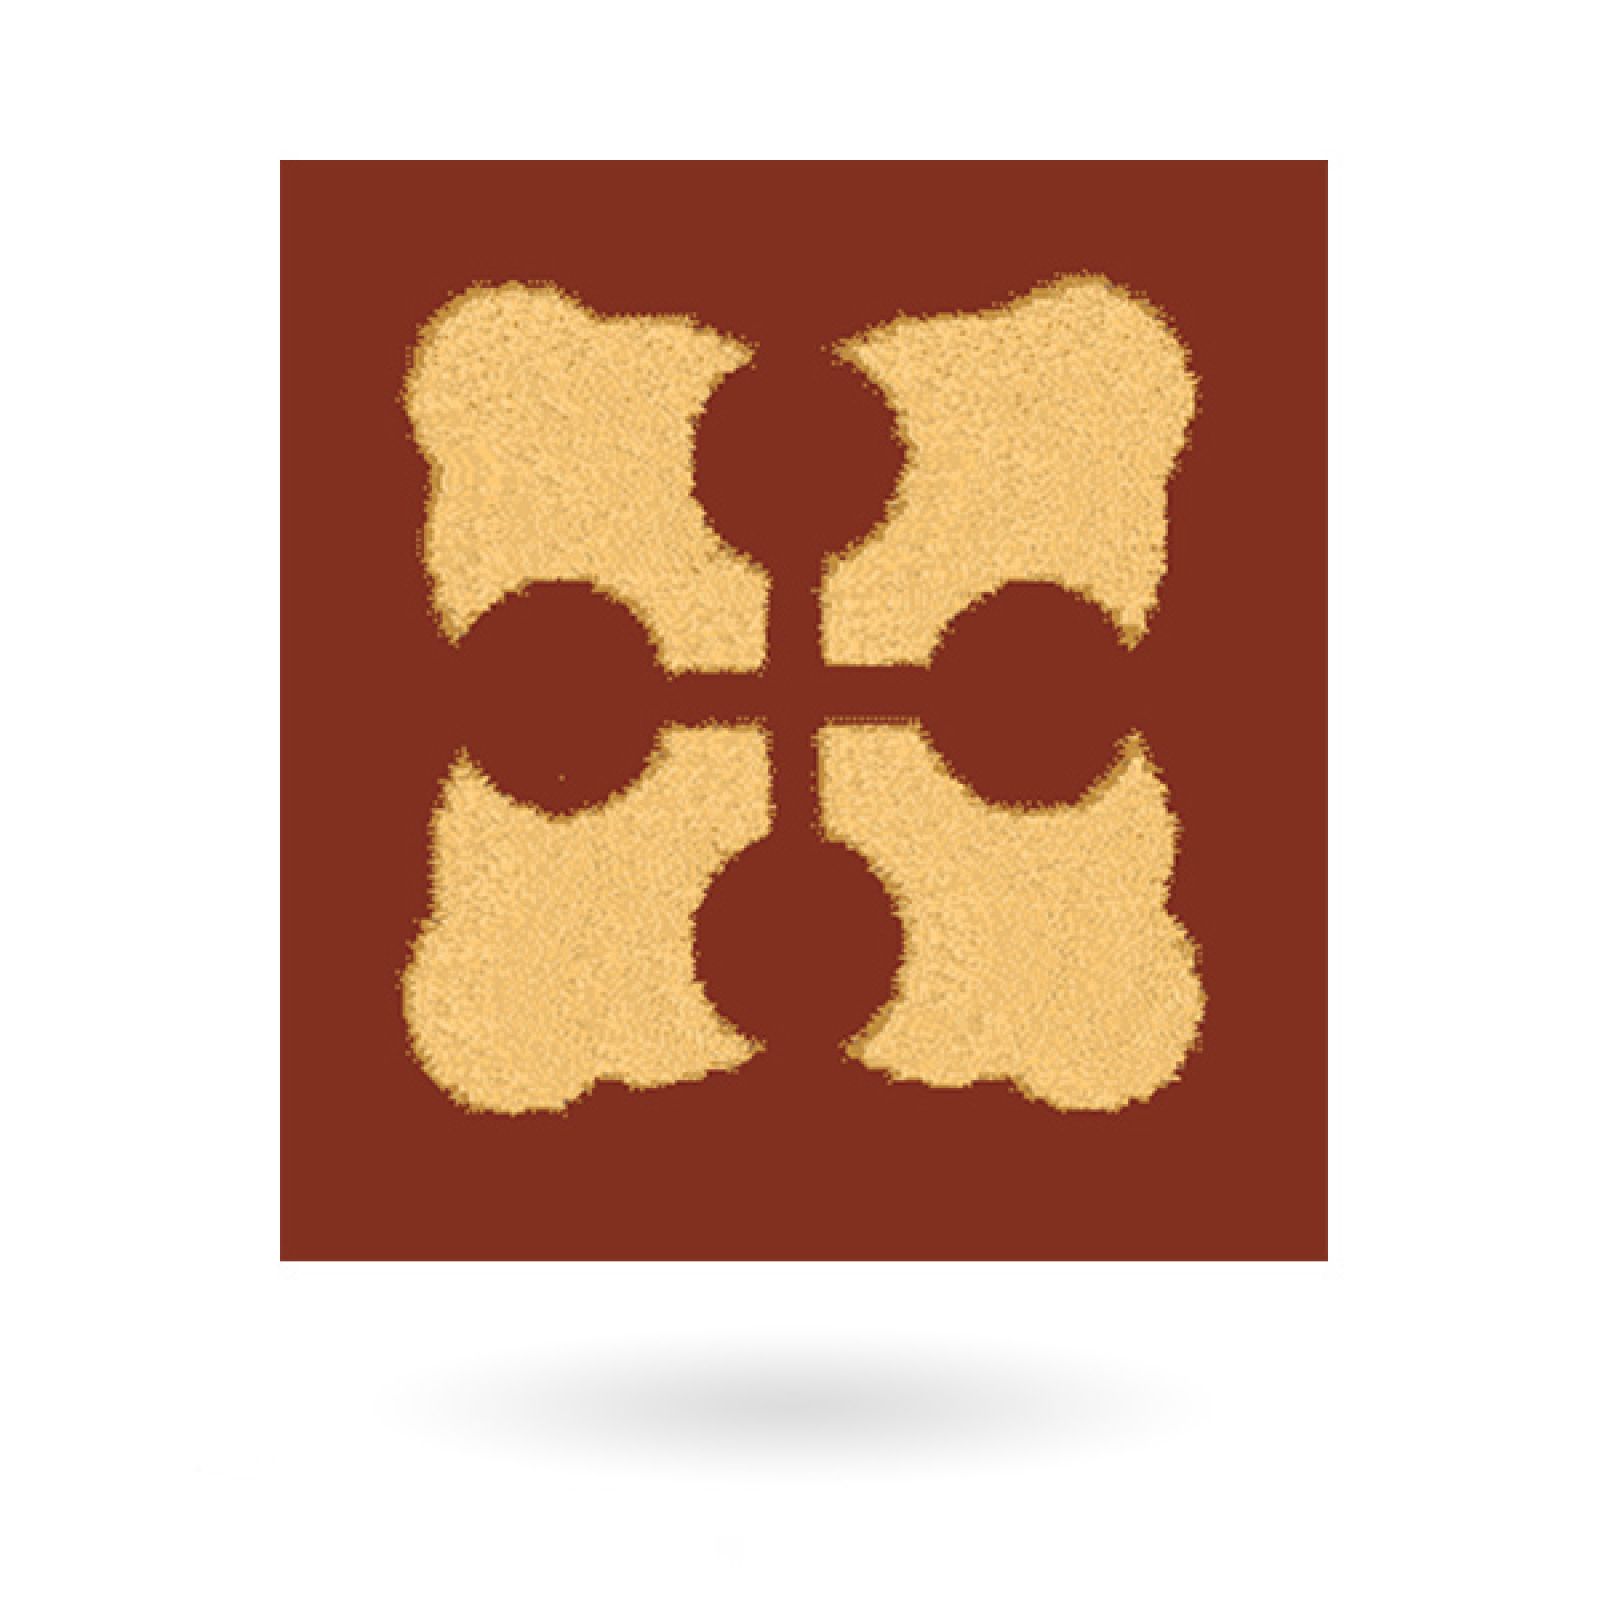 Encaustic 2.25” square tile - design 1